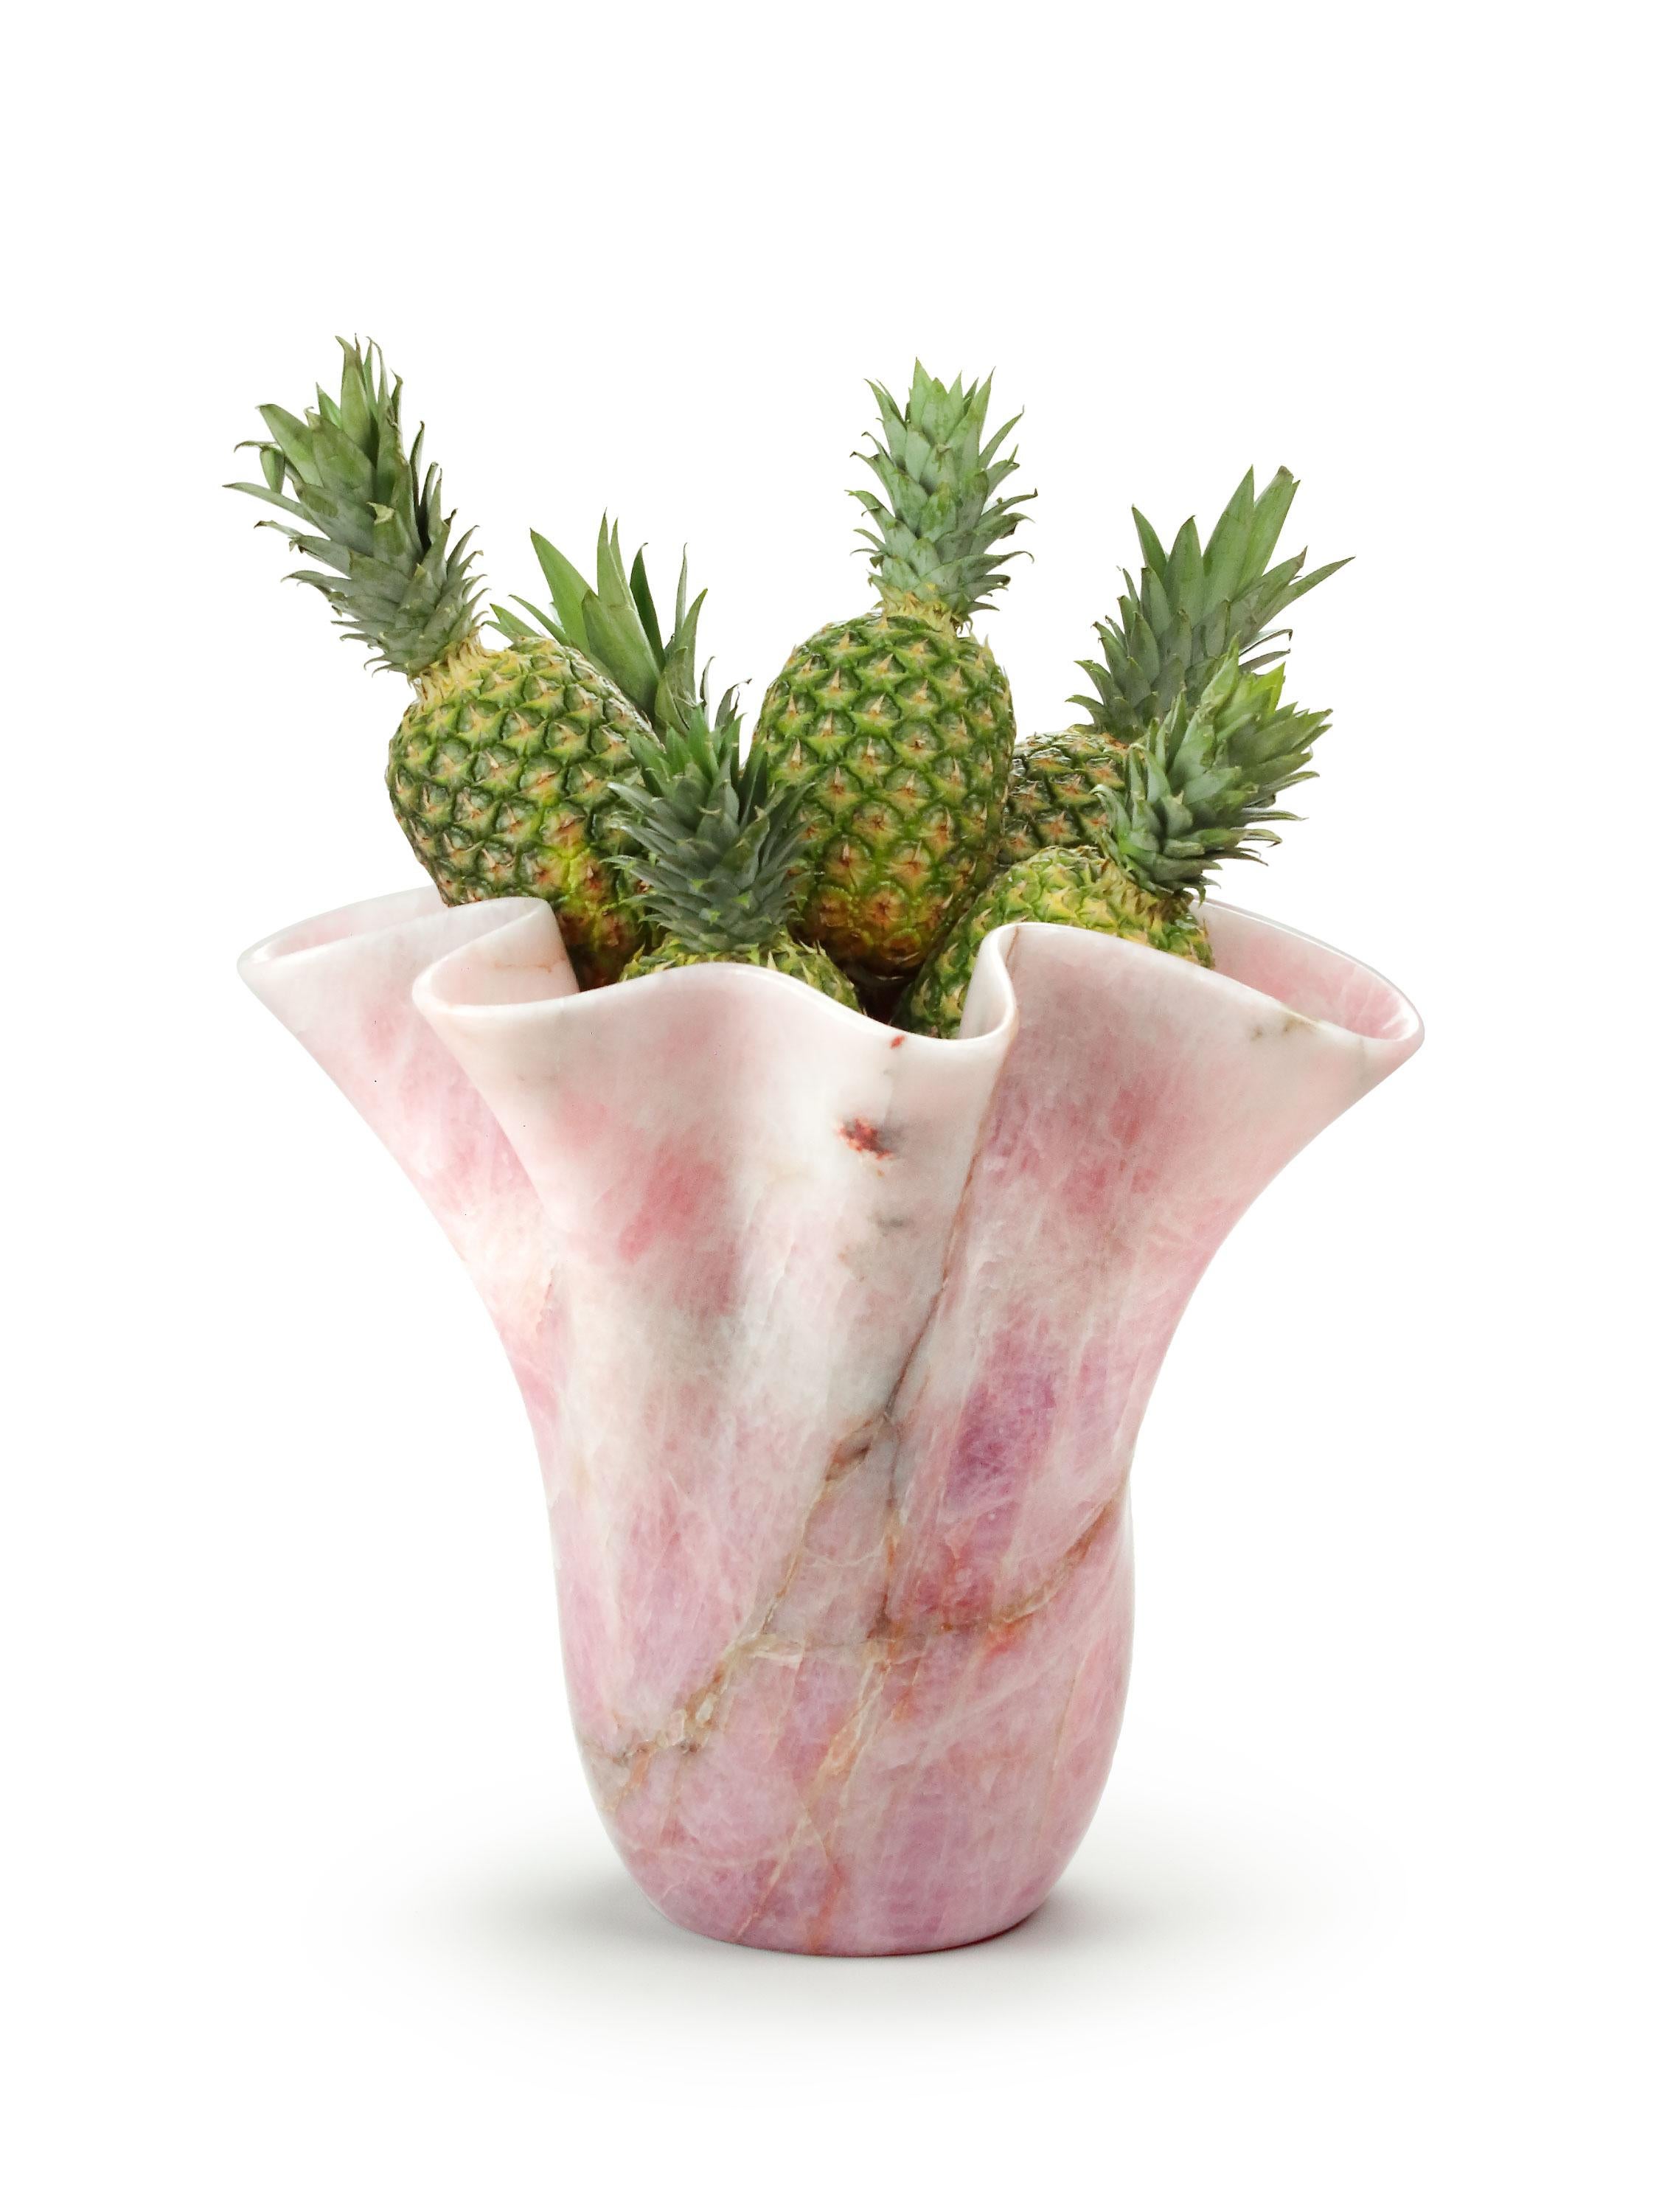 Bedeutende skulpturale Vase, von Hand aus einem massiven Block aus seltenem Rosenquarz geschnitzt.

Abmessungen der Vase: T 57 x H 50 cm, erhältlich in verschiedenen Quarzit-, Onyx- und Marmorsorten.

Limitierte Auflage von 35 Stück.

Jede Vase ist